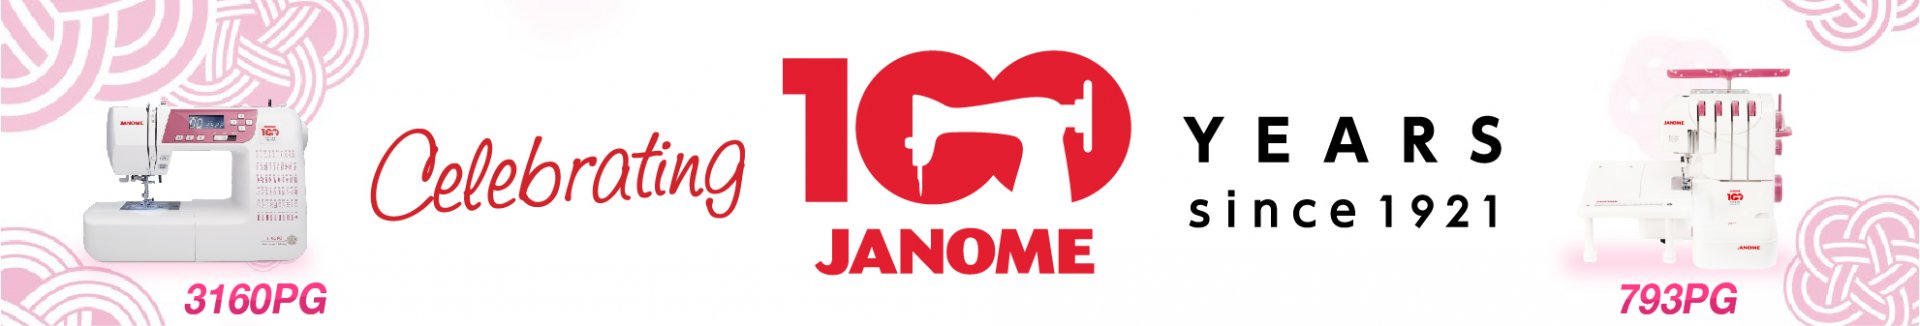 JANOME 100 Yaer